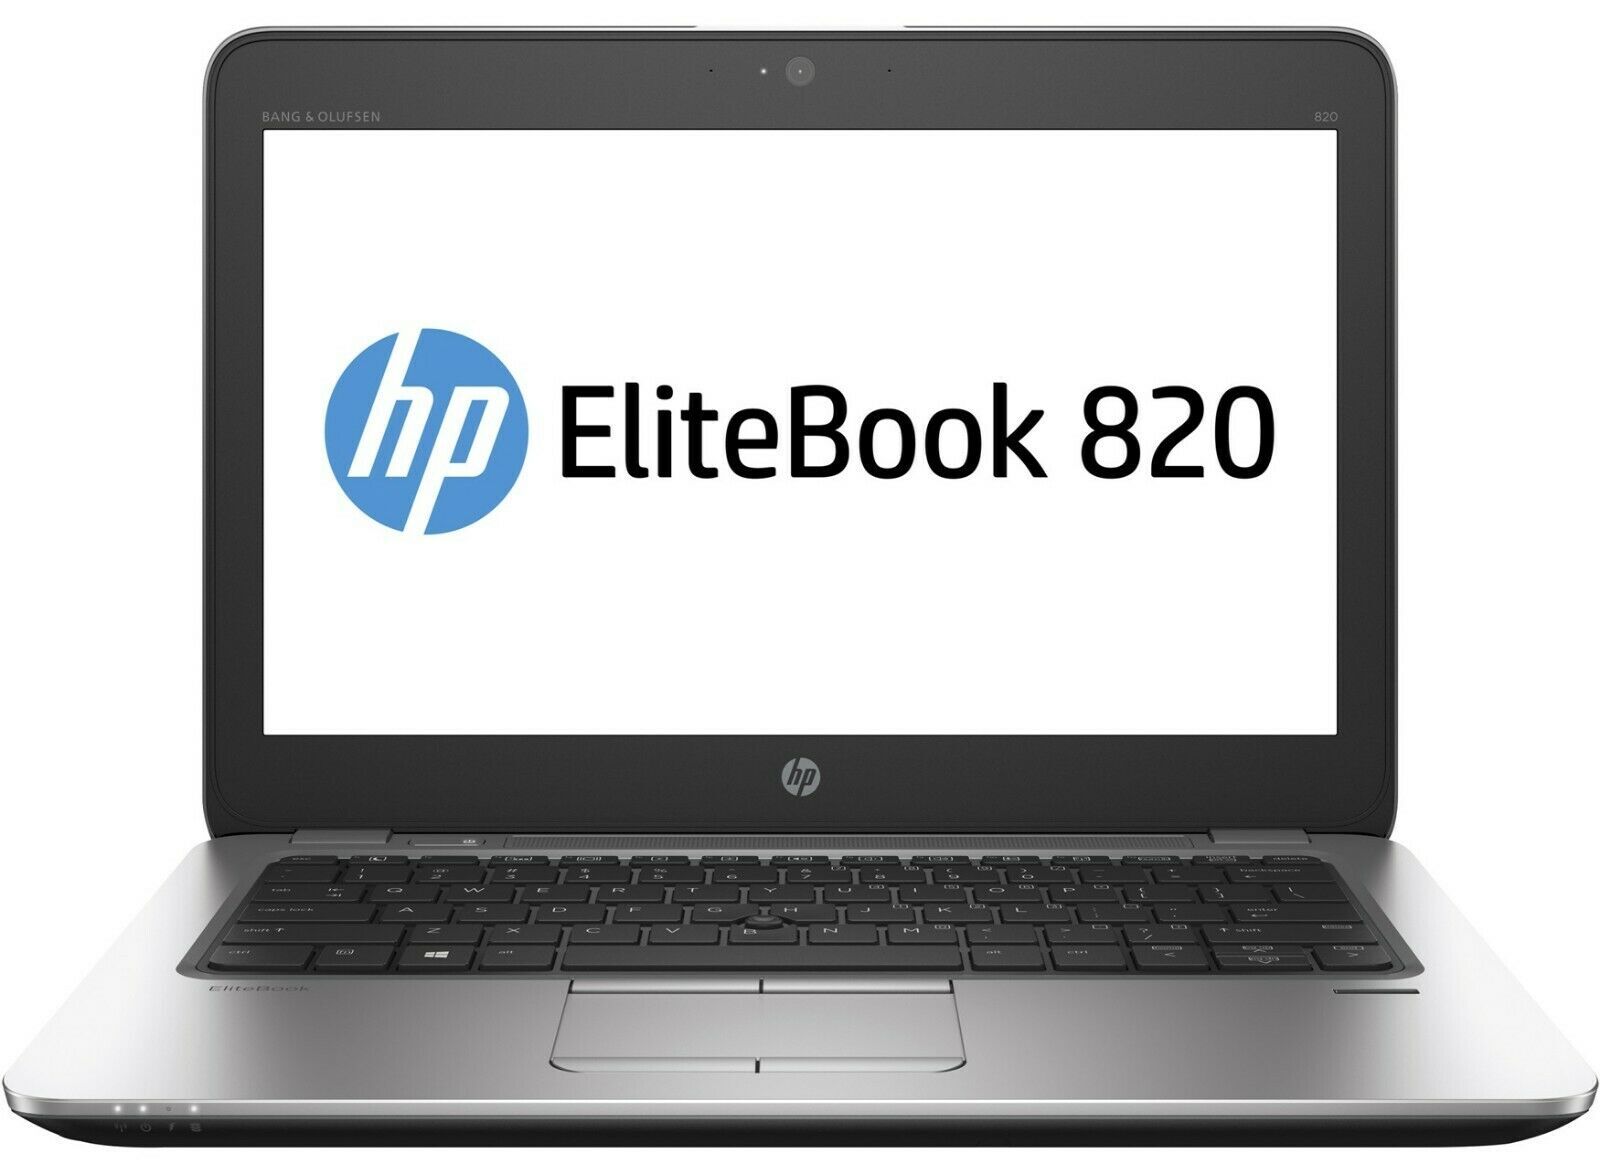 HP EliteBook 820 G3 Intel i7 6600U 2.60GHz 8GB RAM 500GB SSD 12.5" Win 10